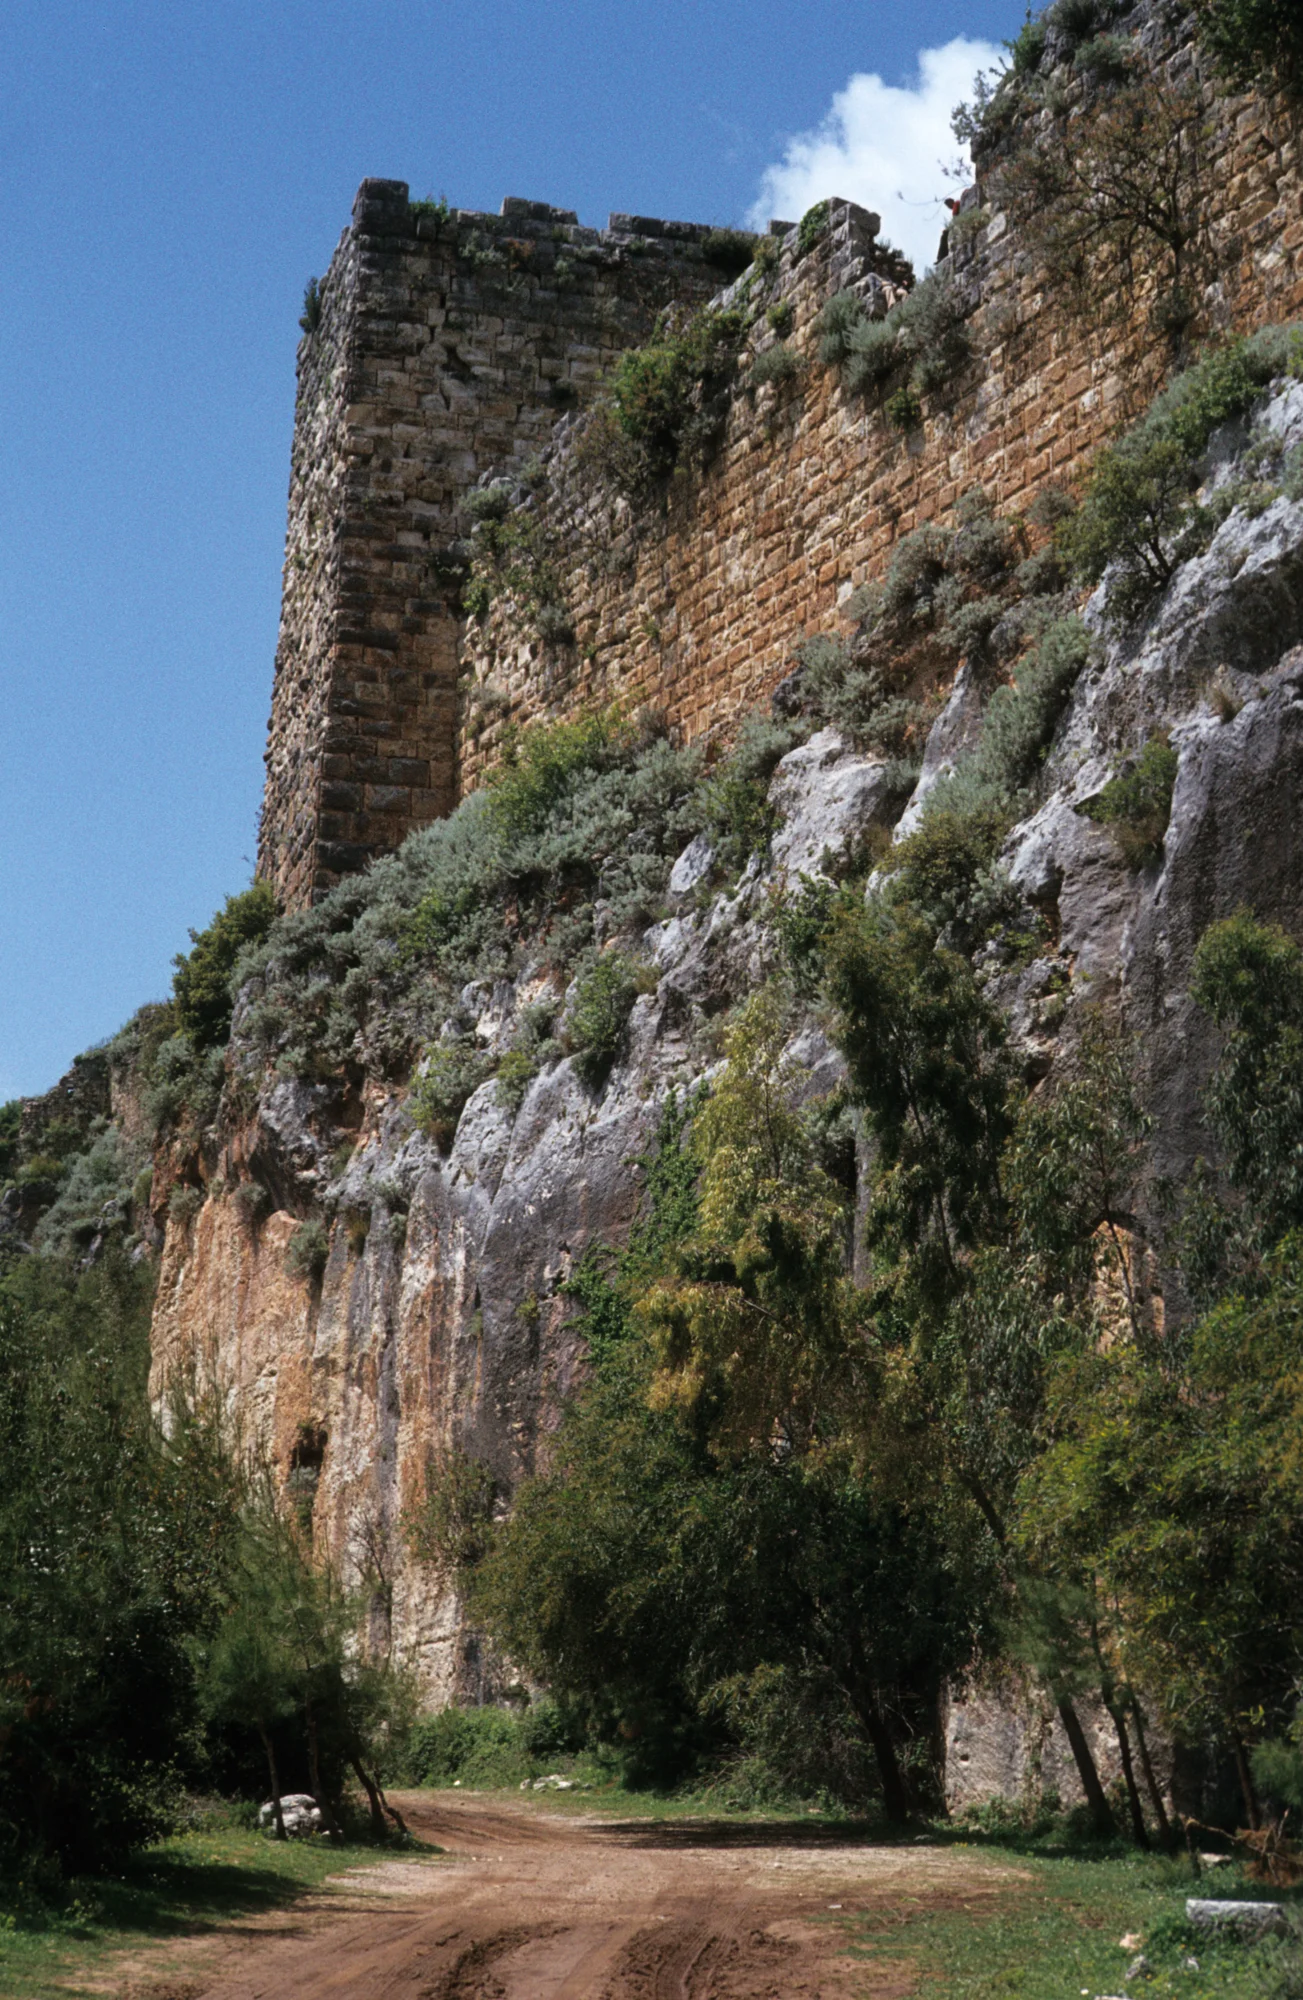 Salah ad-Din Castle, massive castle walls above the vertical rock face